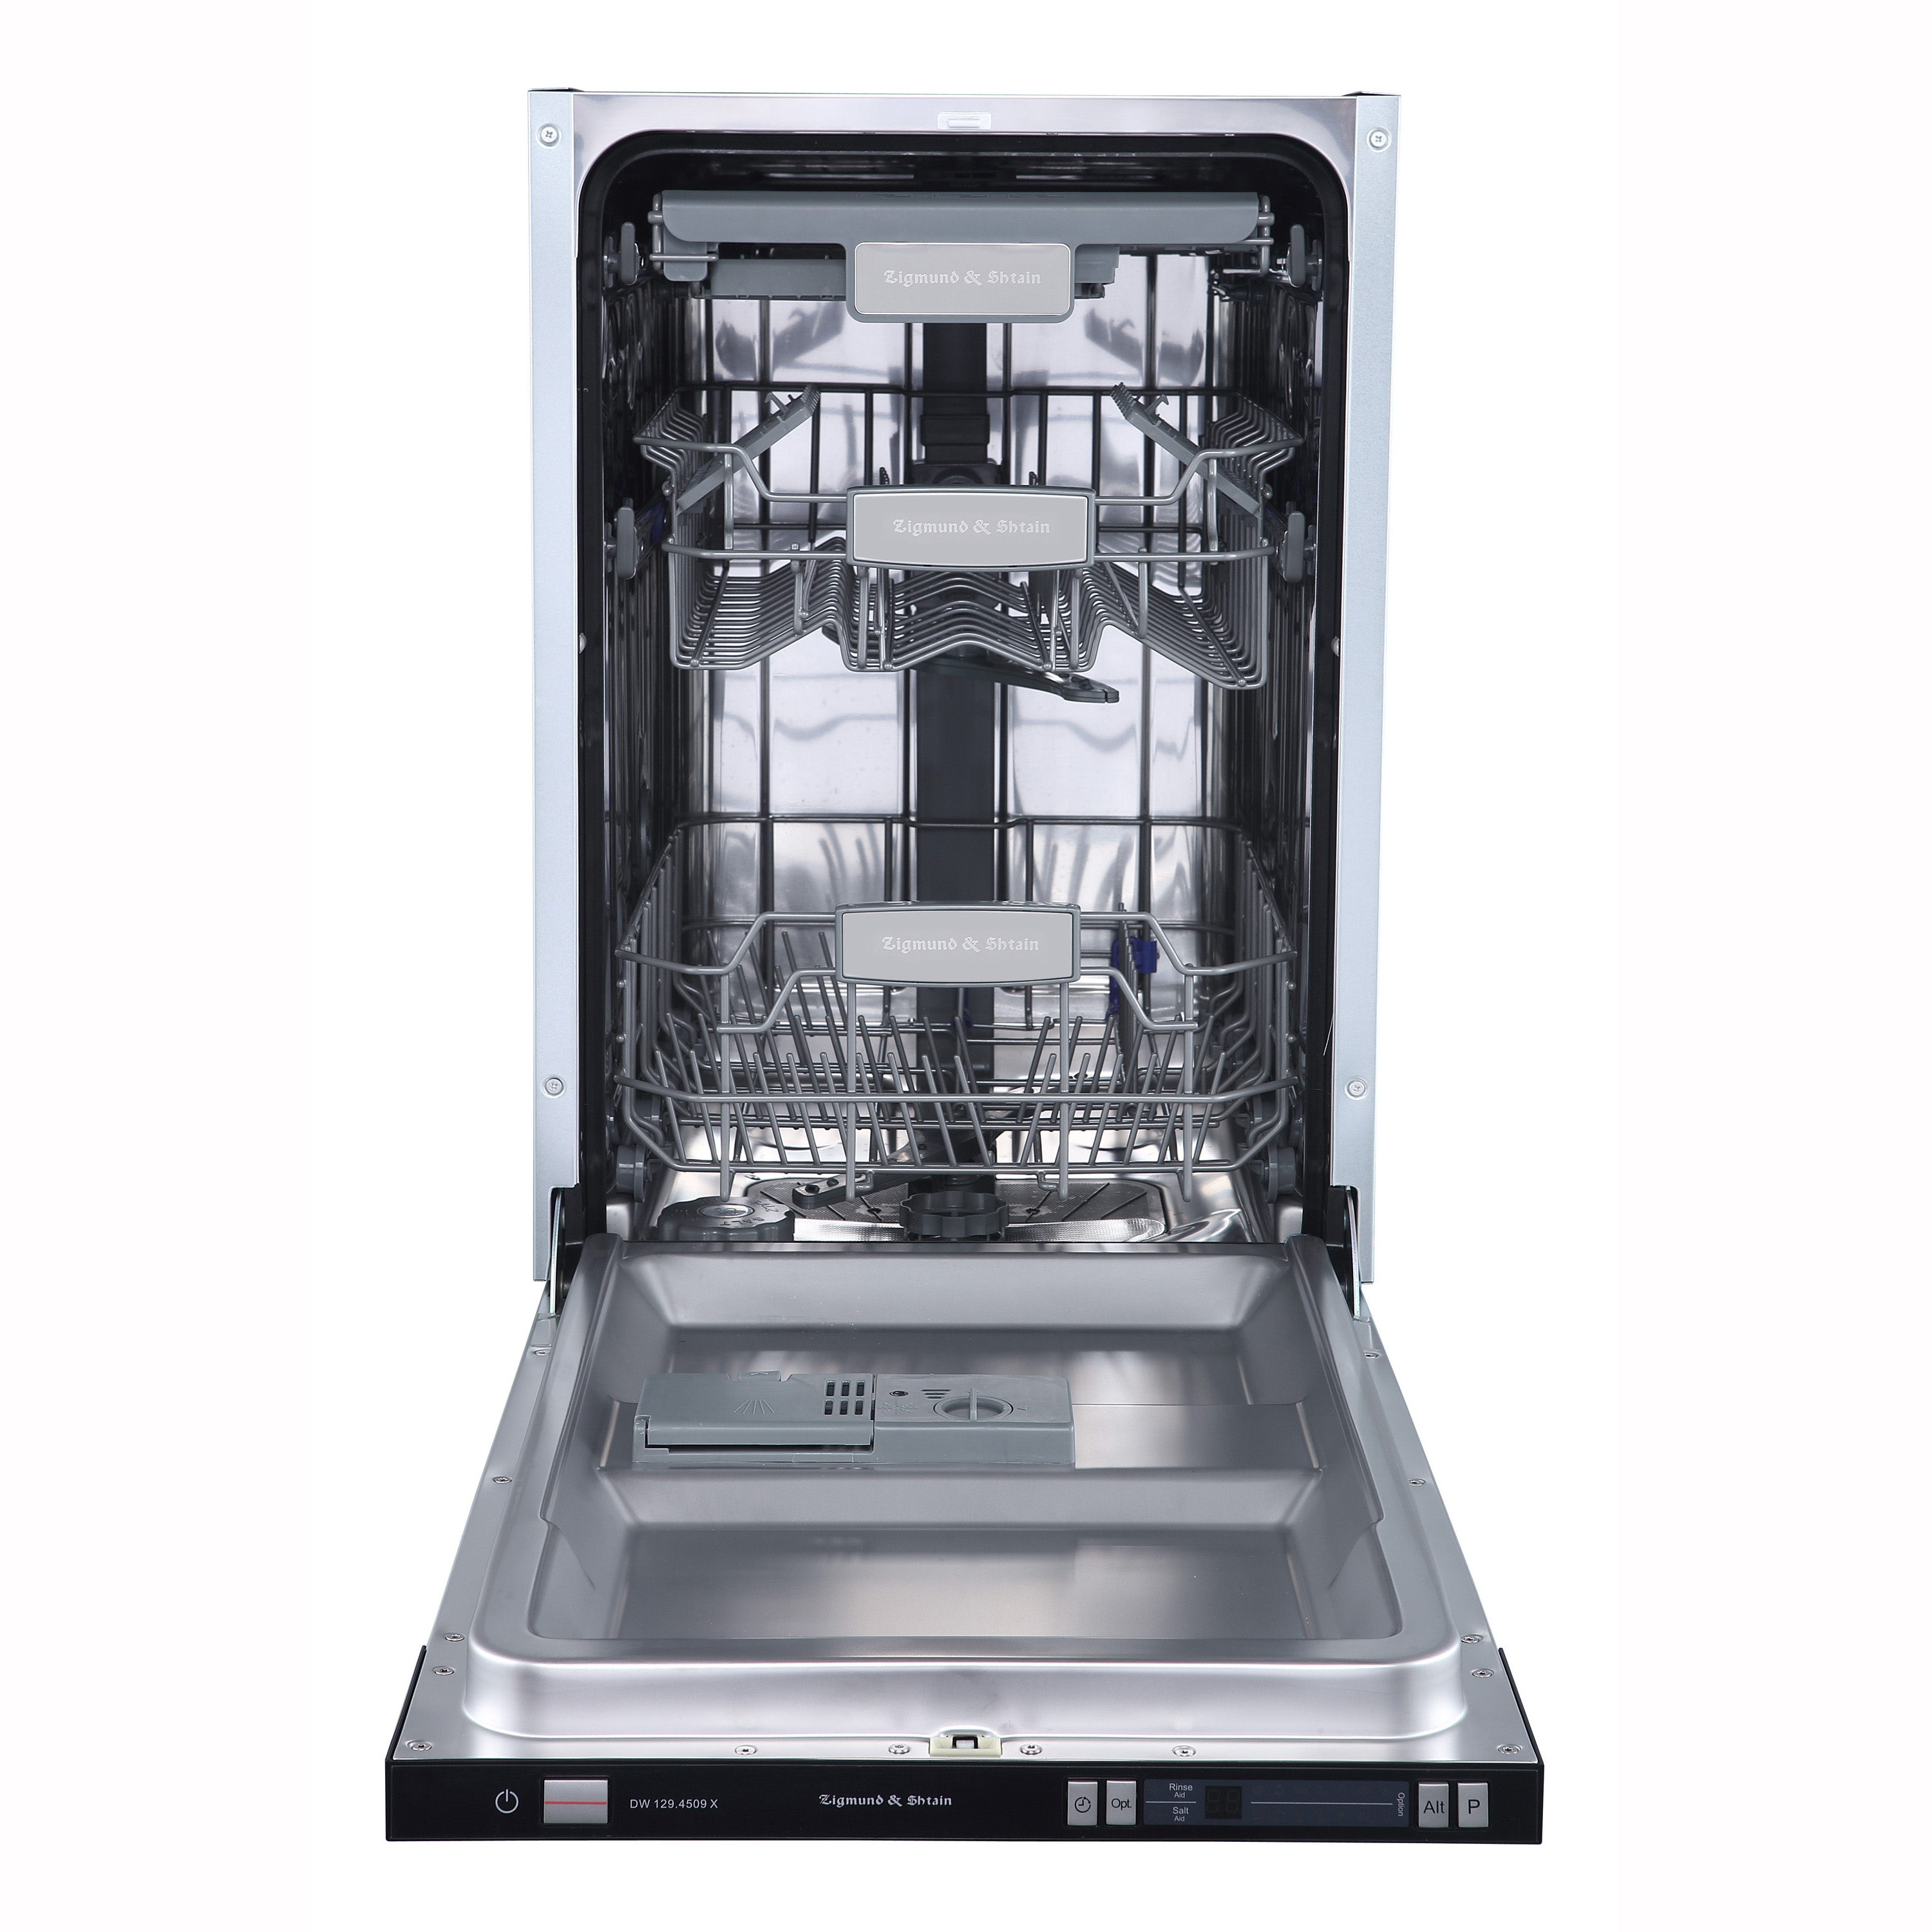 Встраиваемая посудомоечная машина Zigmund & Shtain DW 129.4509 X встраиваемая посудомоечная машина zigmund